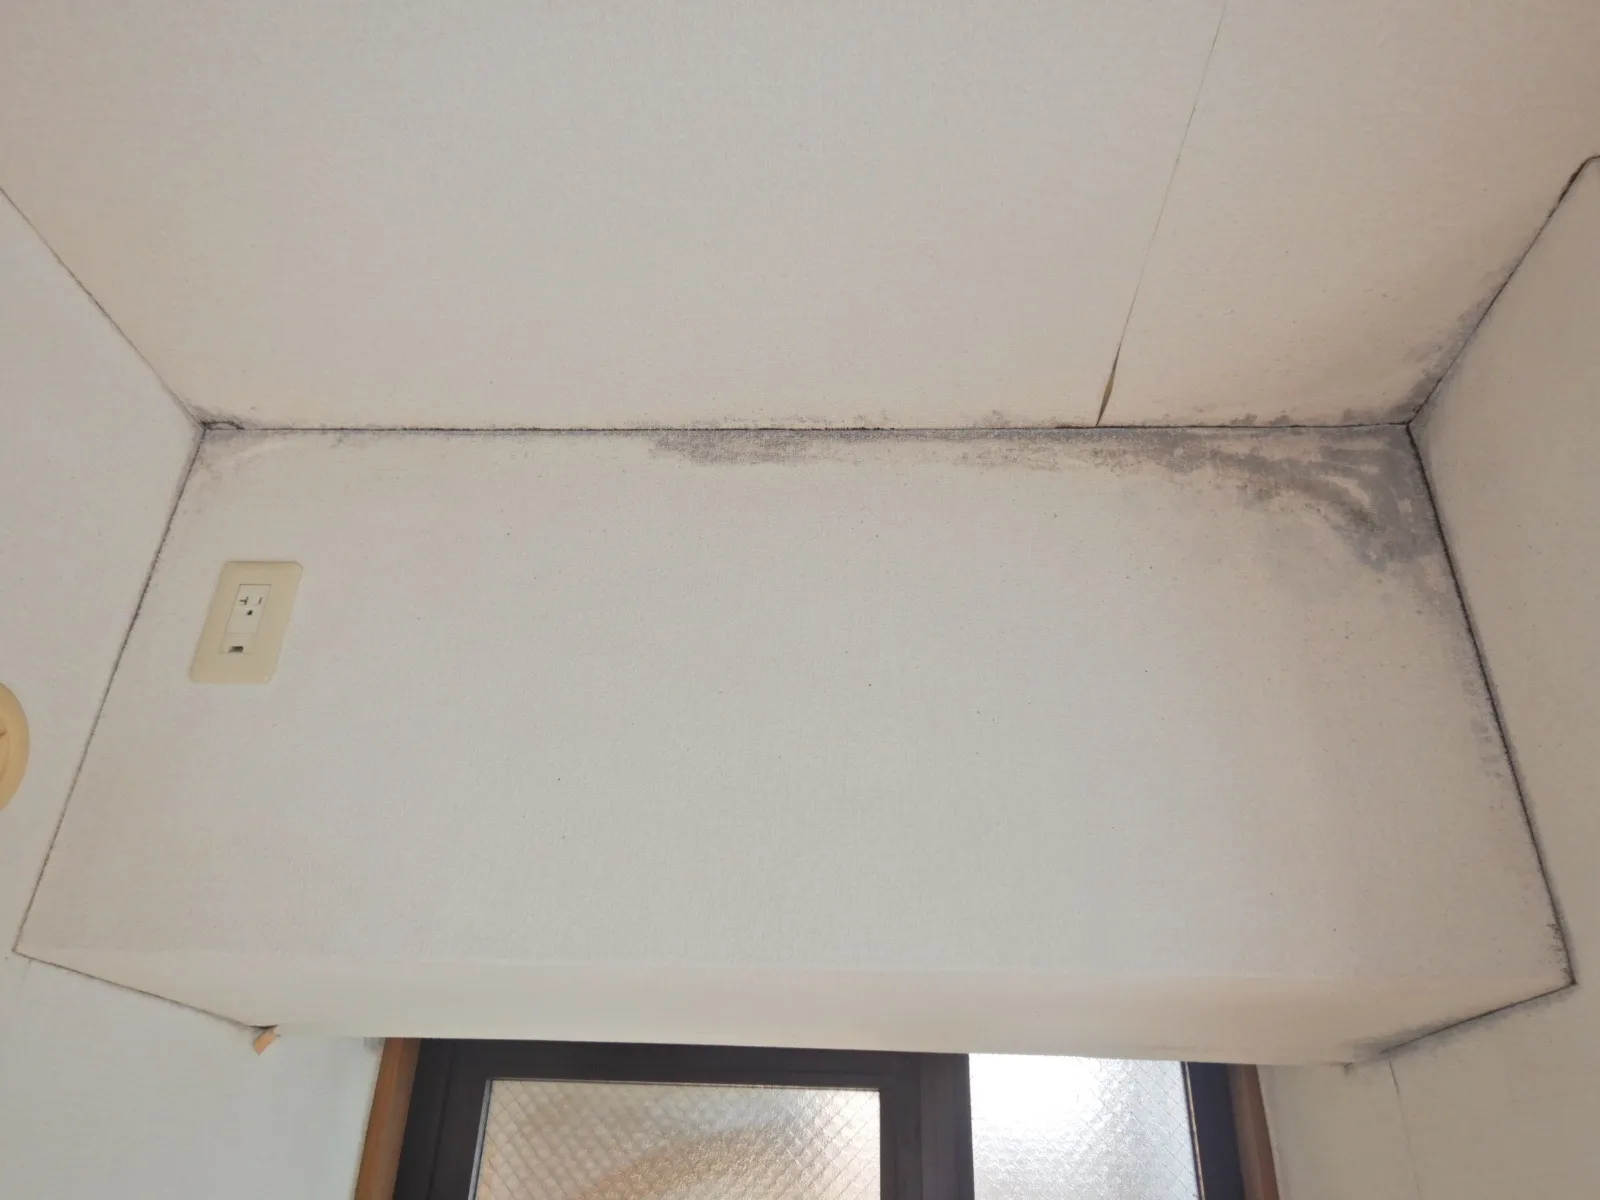 【集合住宅】カビ臭い部屋は壁紙剥がしても下地にカビが根付いている